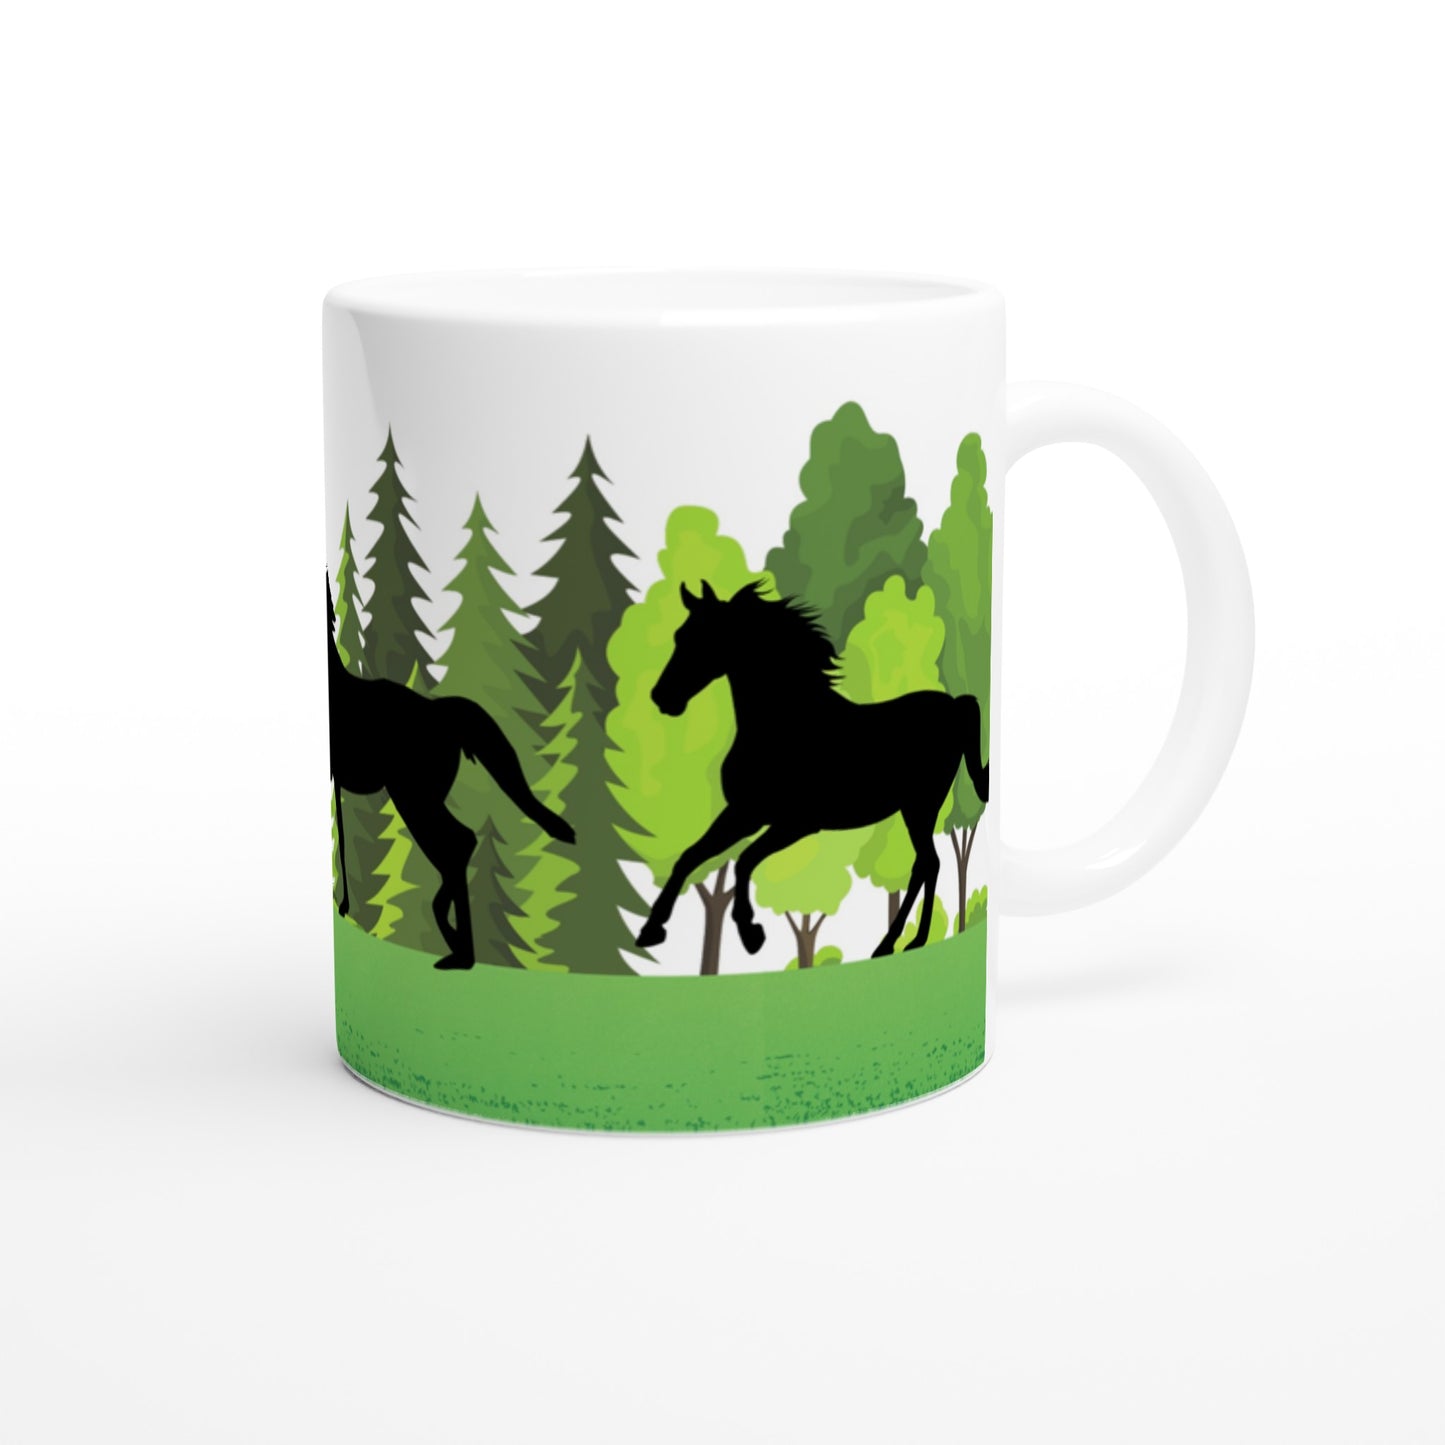 Bonita taza de paisaje con caballos